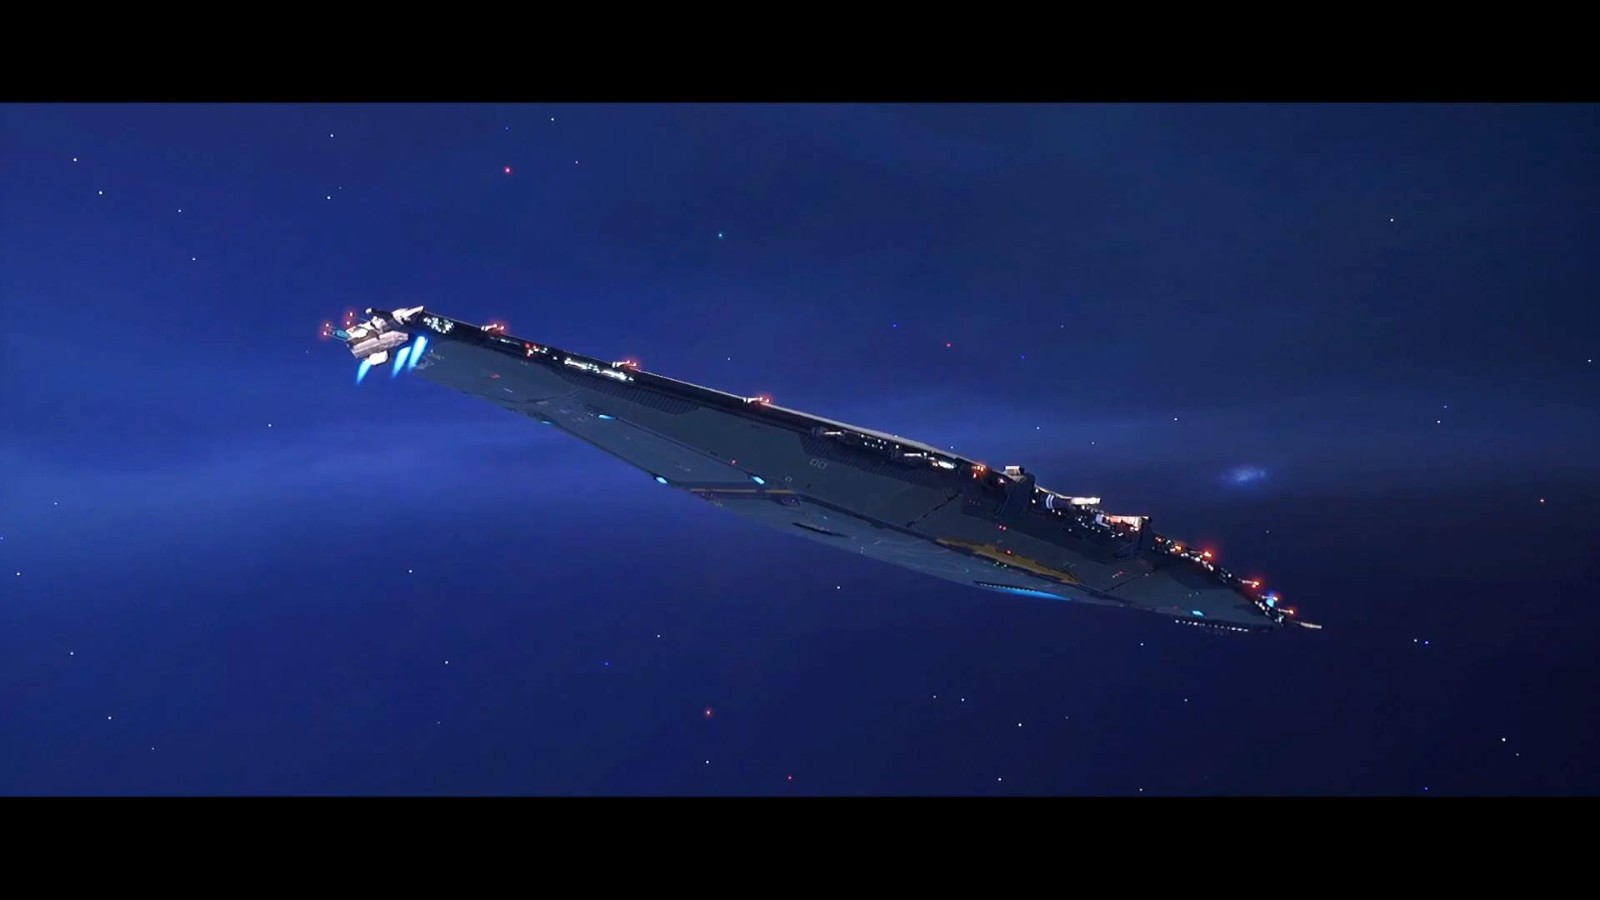 《家園3》卡-庫申母艦演示視頻 艦身角度可調節